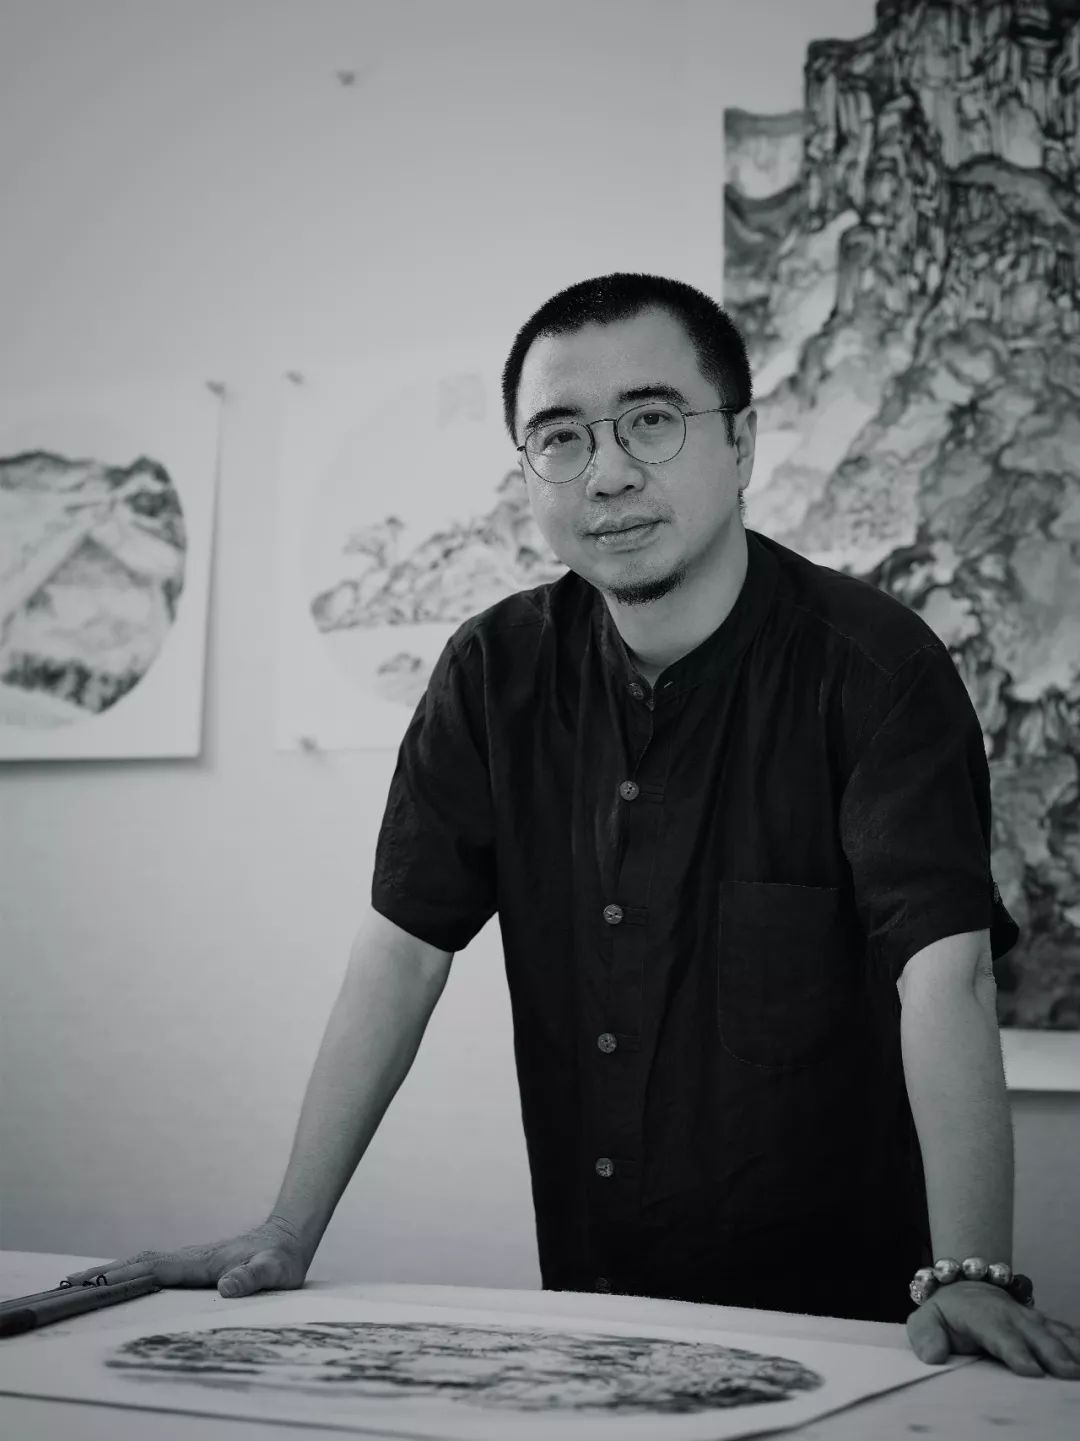 150cm×150cm 纸本设色 2008年张廷波广东画院签约画家张廷波《得